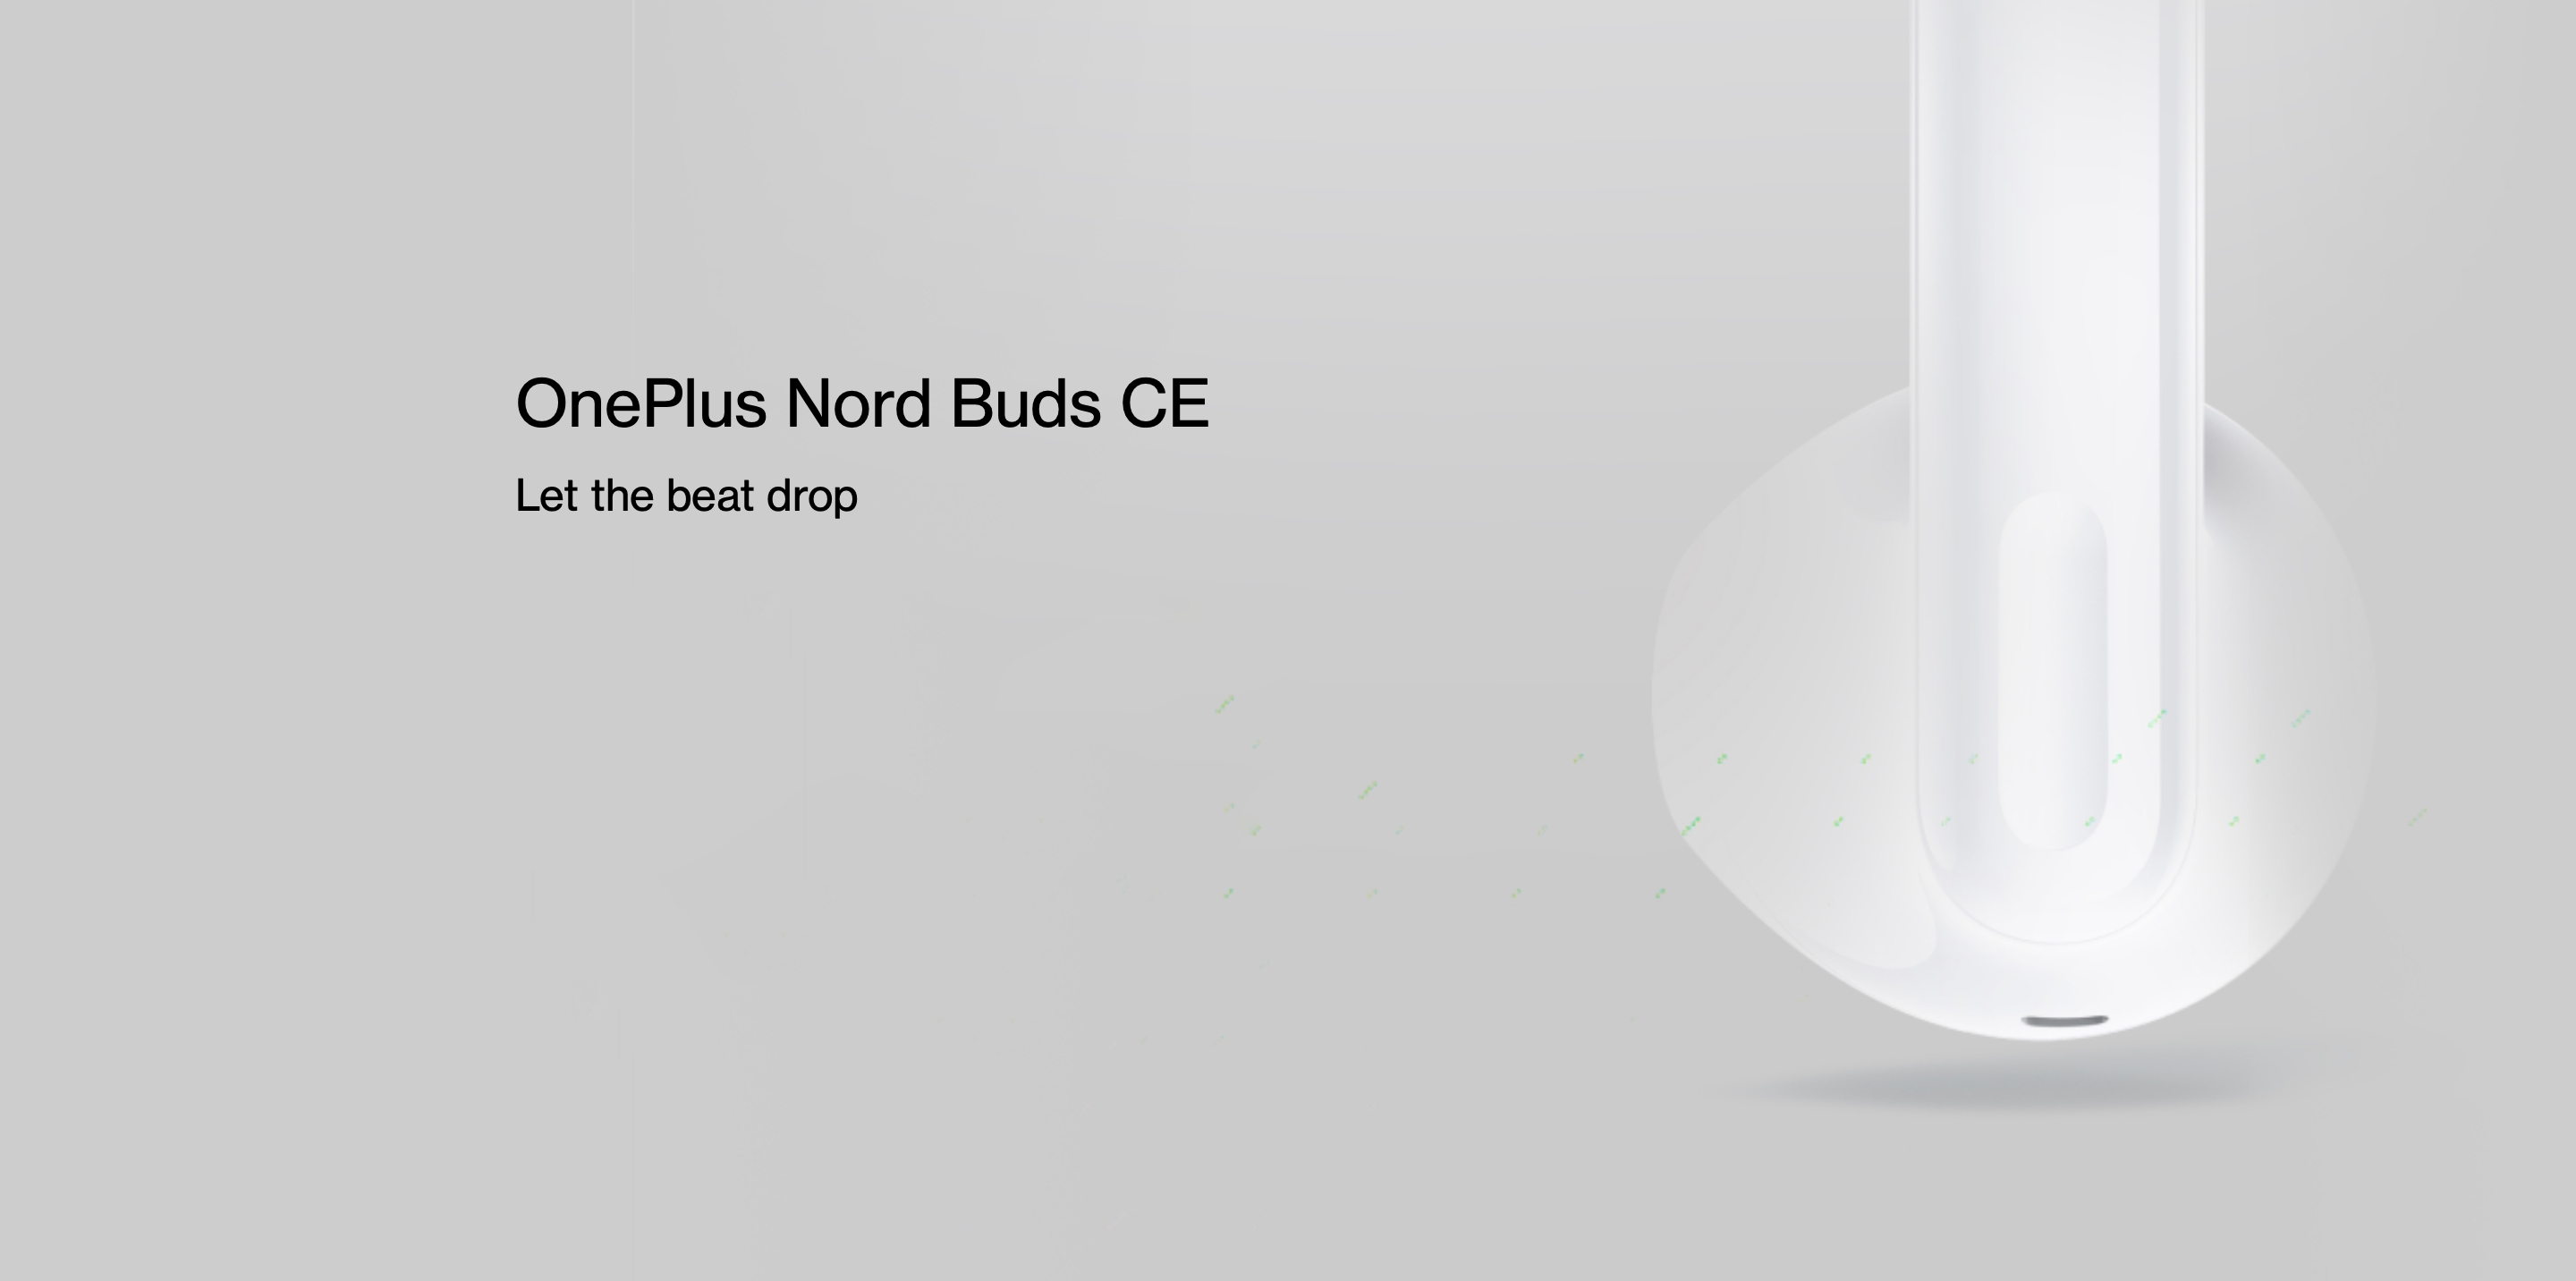 OnePlus stellt am 1. August die preisgünstigen TWS-Kopfhörer Nord Buds CE vor